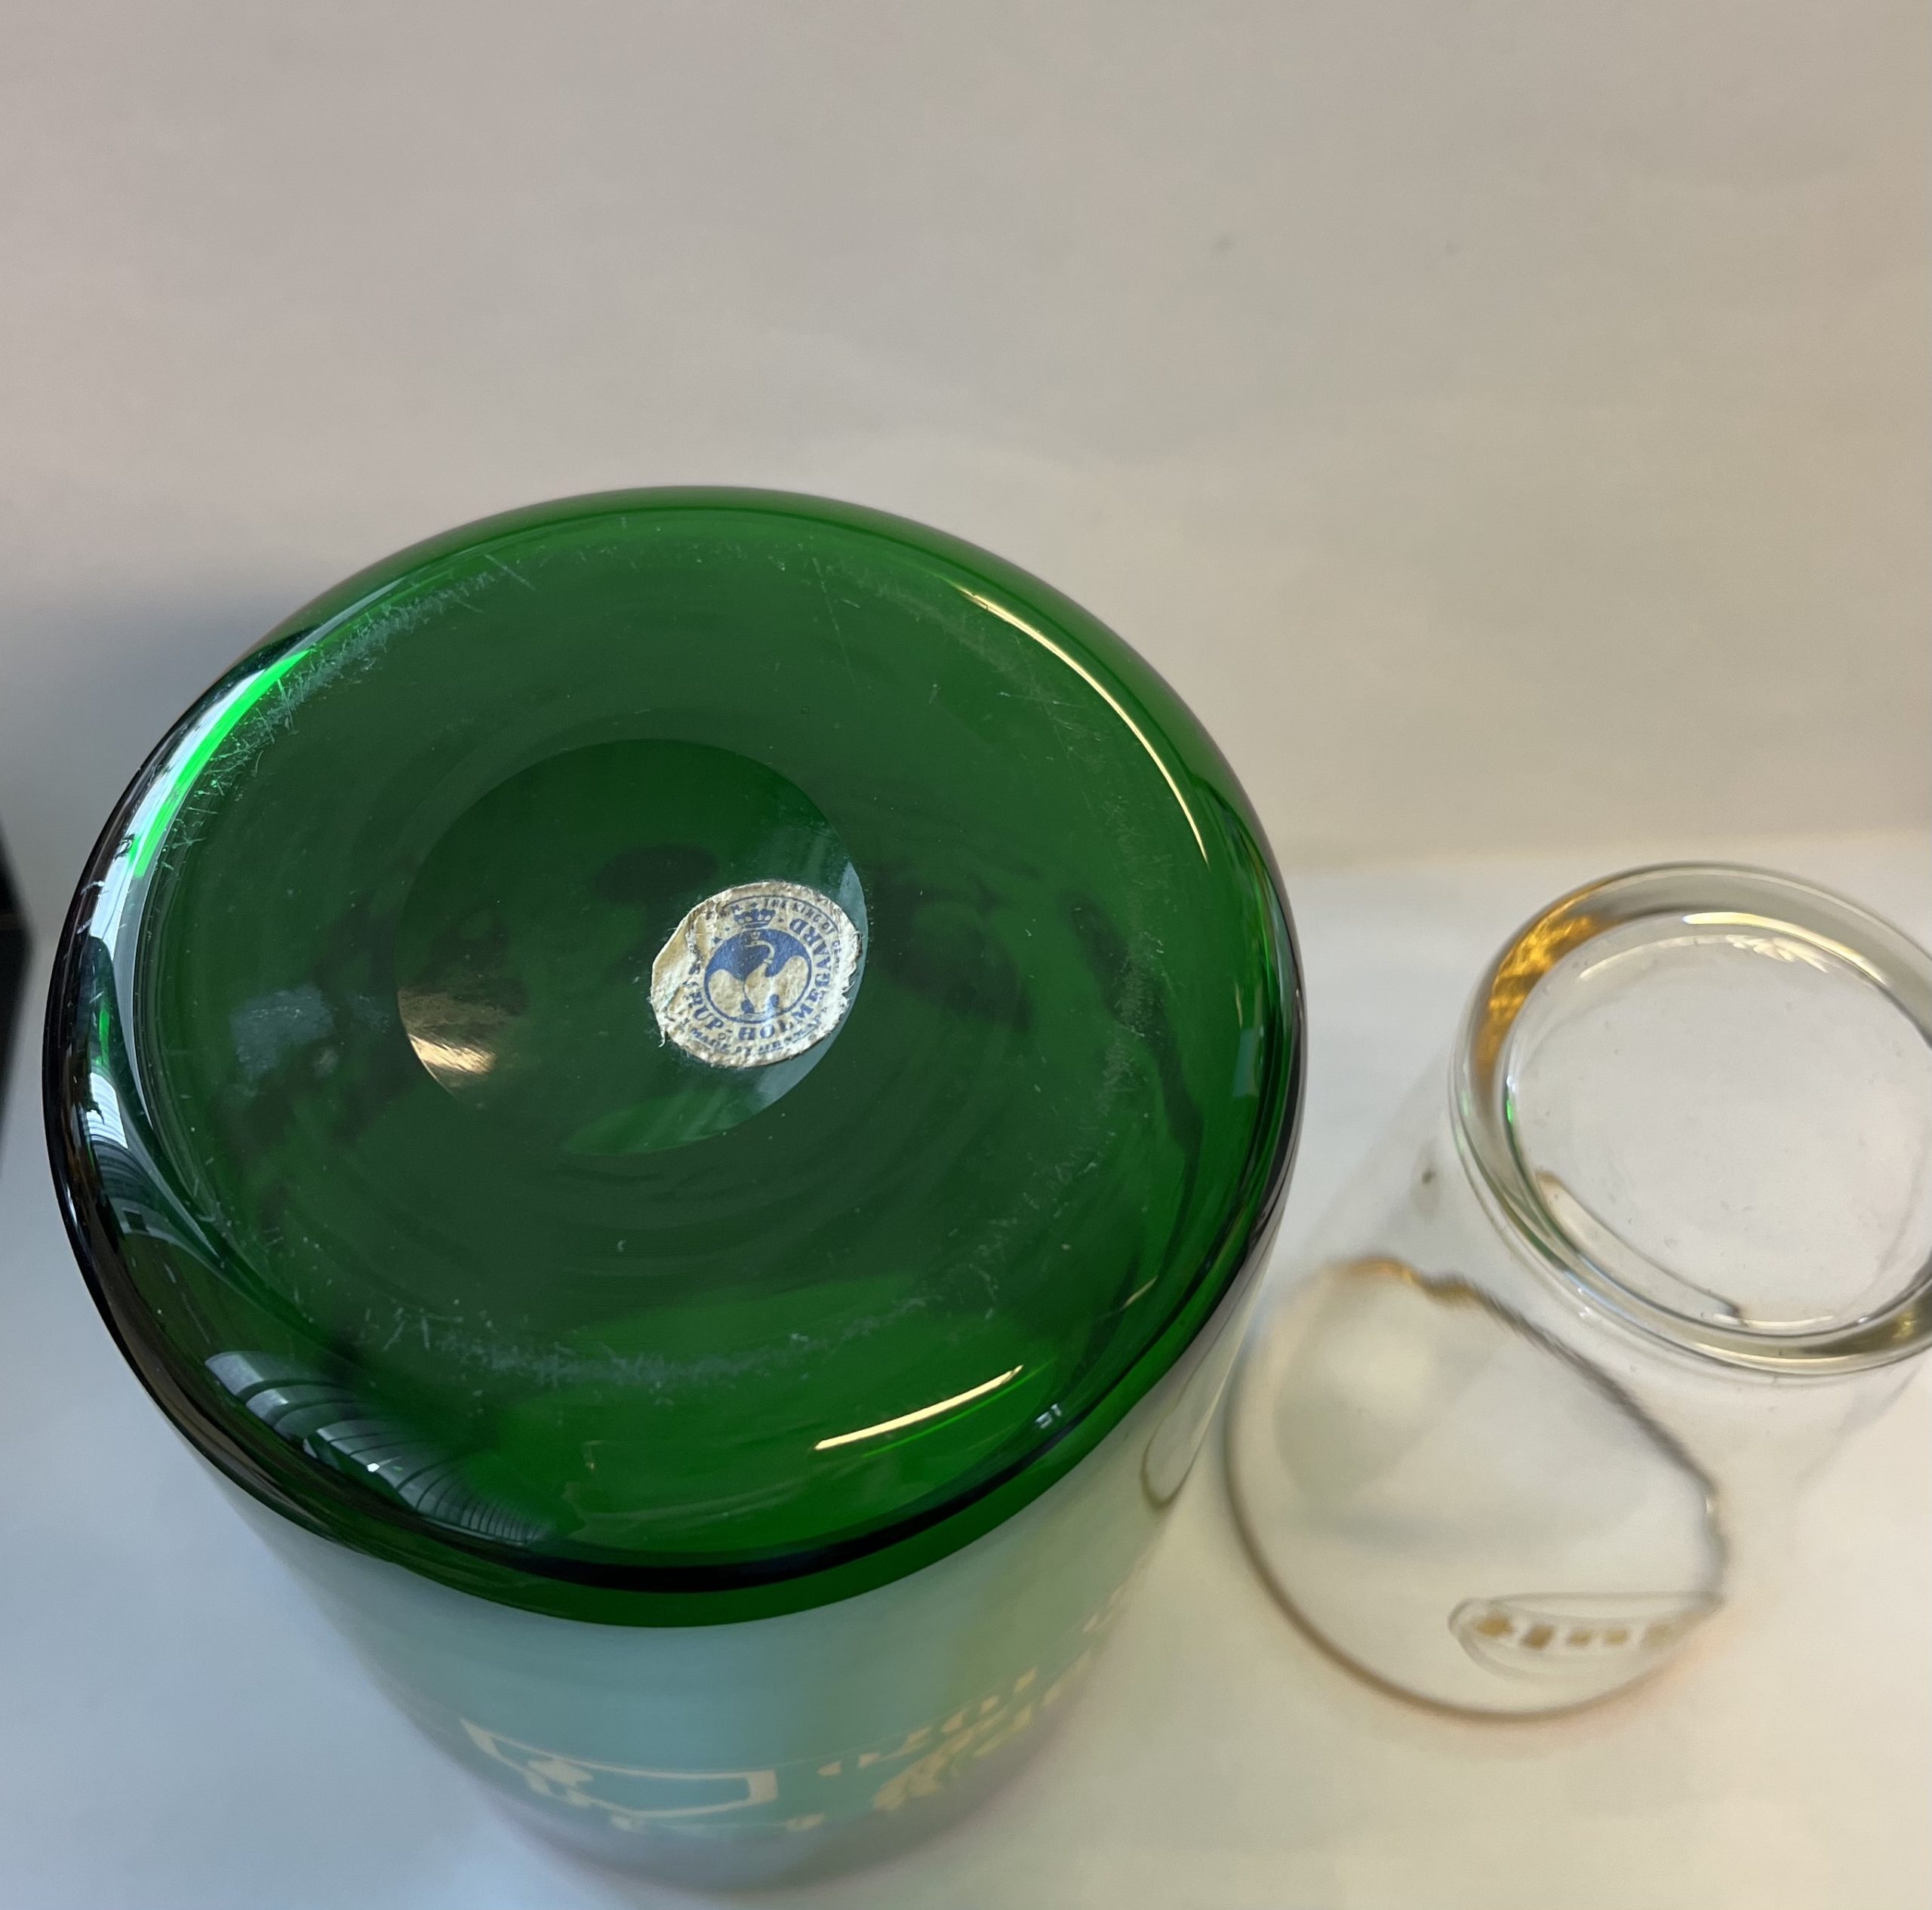 markedsføring Vi ses på vegne af Gulf glas & vase-Fi1902 - Genbrugsauktion